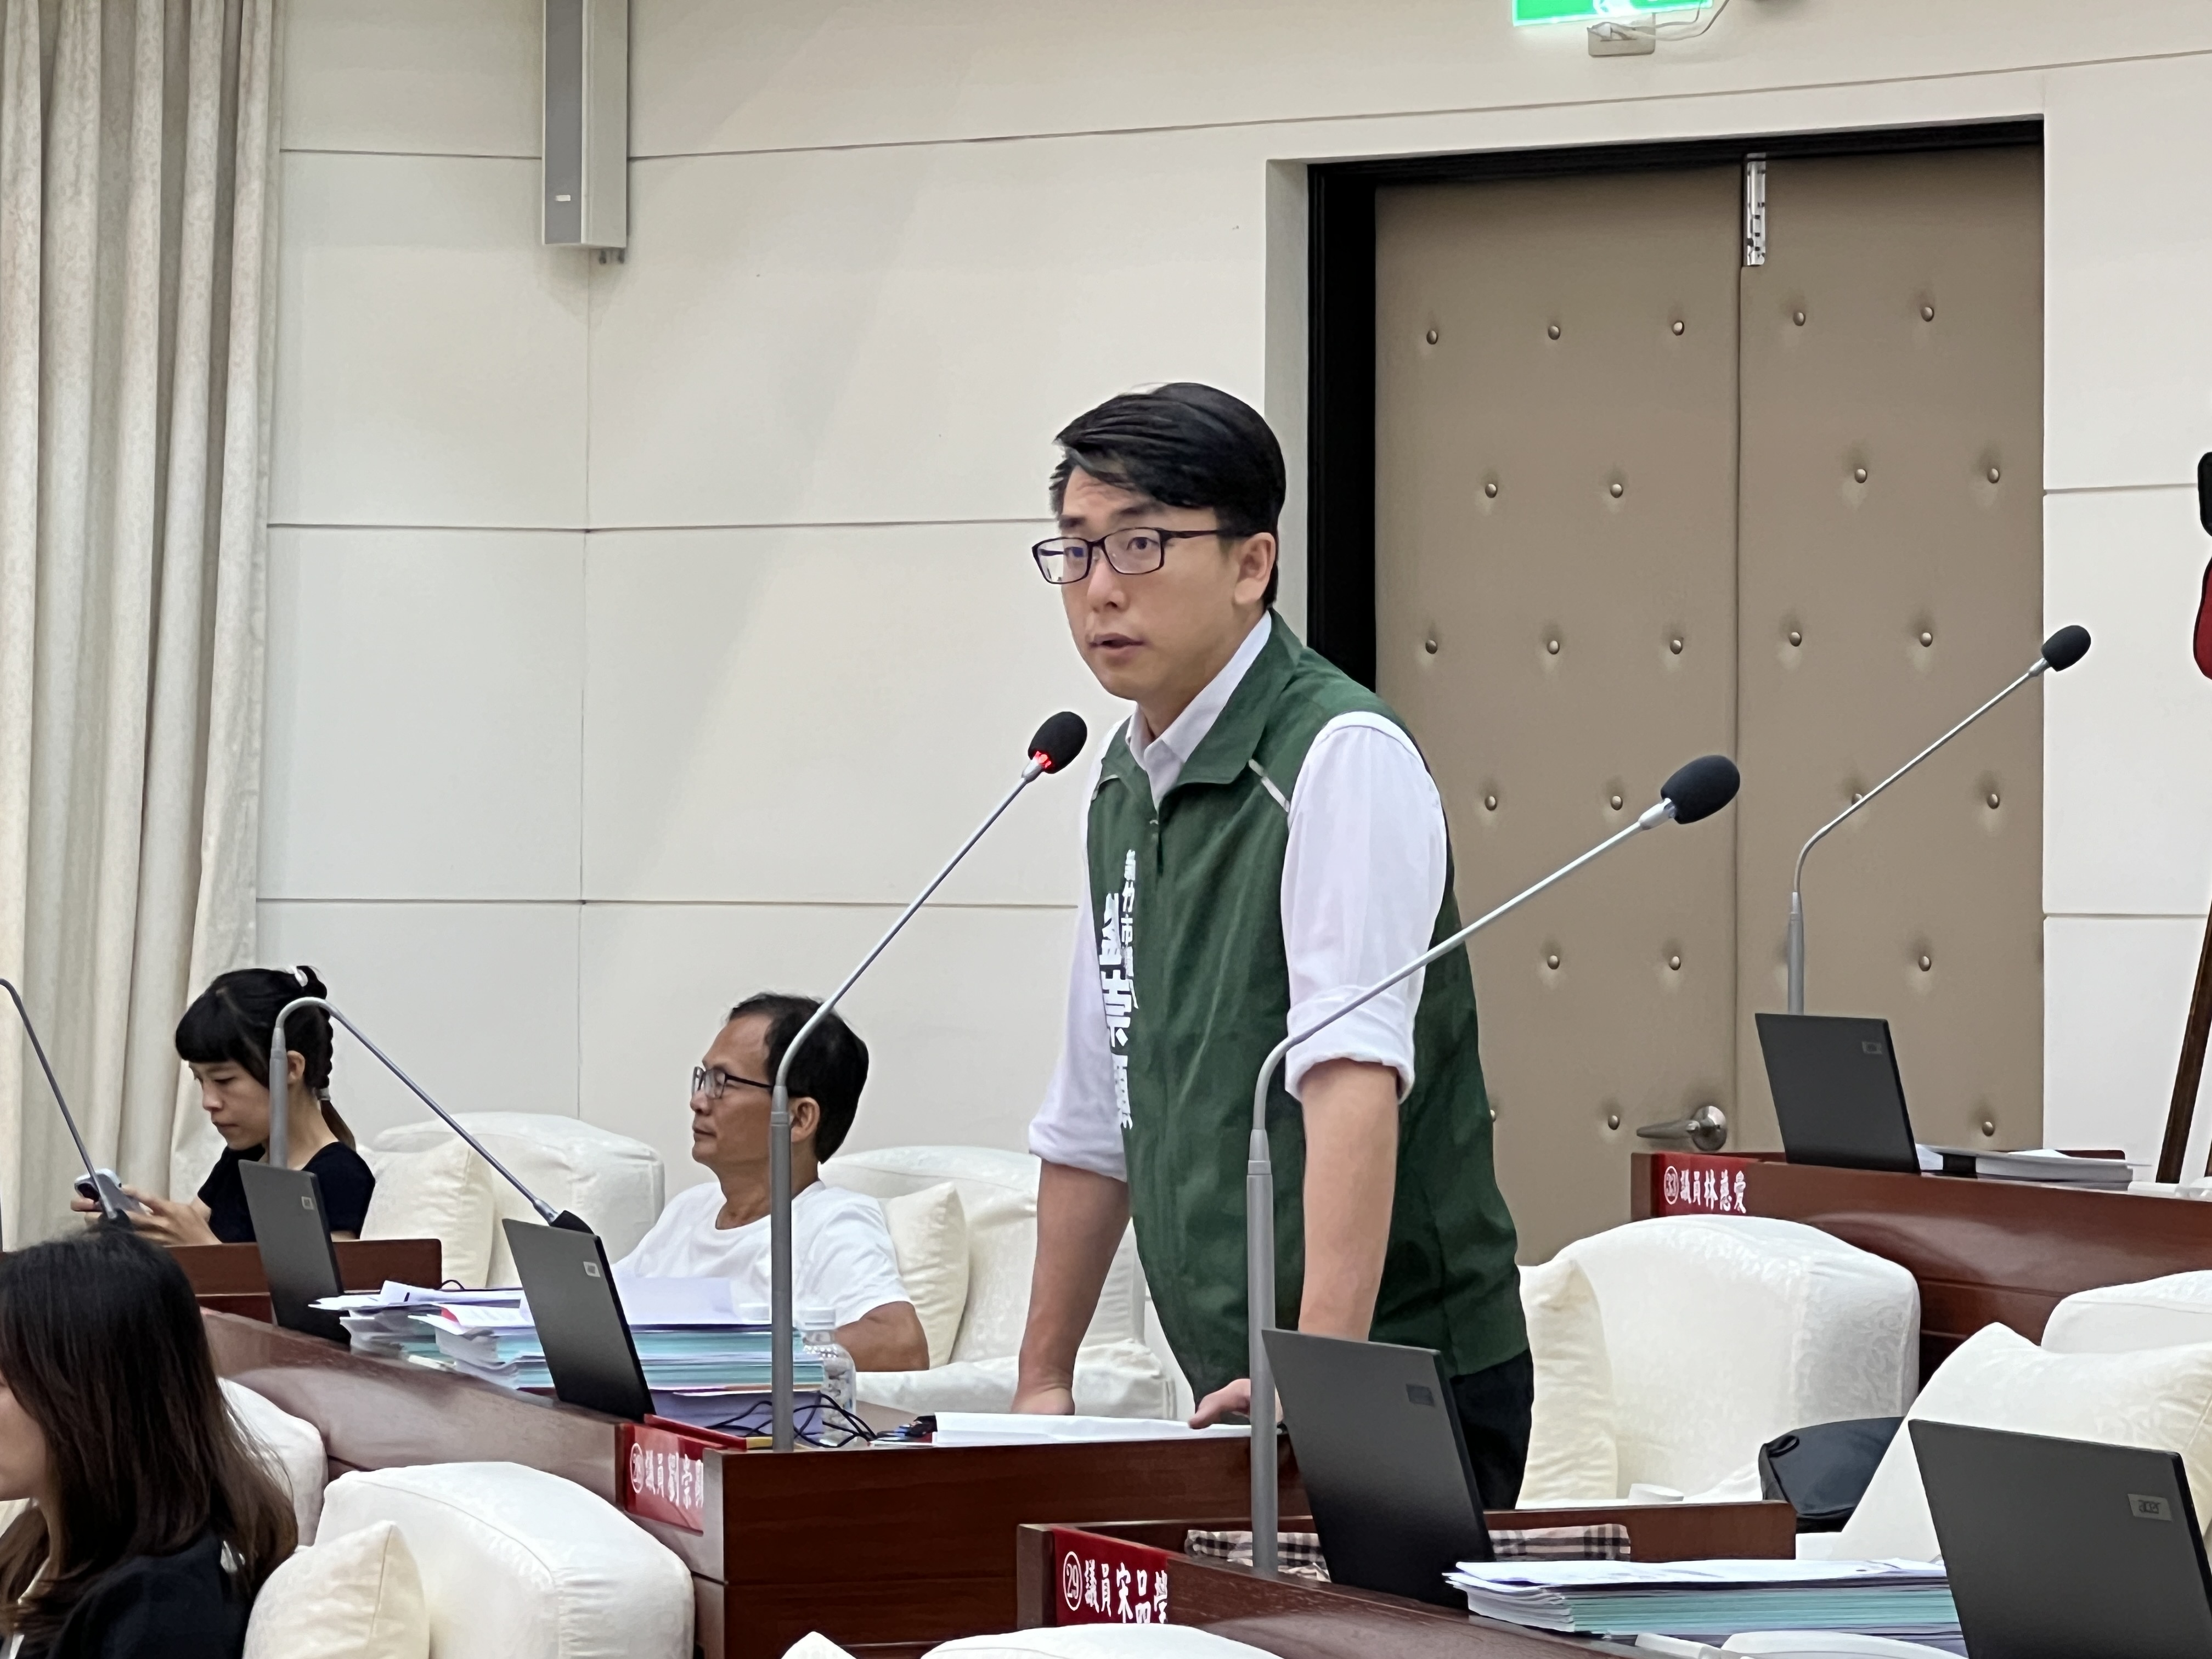 新竹市议员刘崇显关心新竹市立棒球场的改善进度。记者黄羿馨／摄影